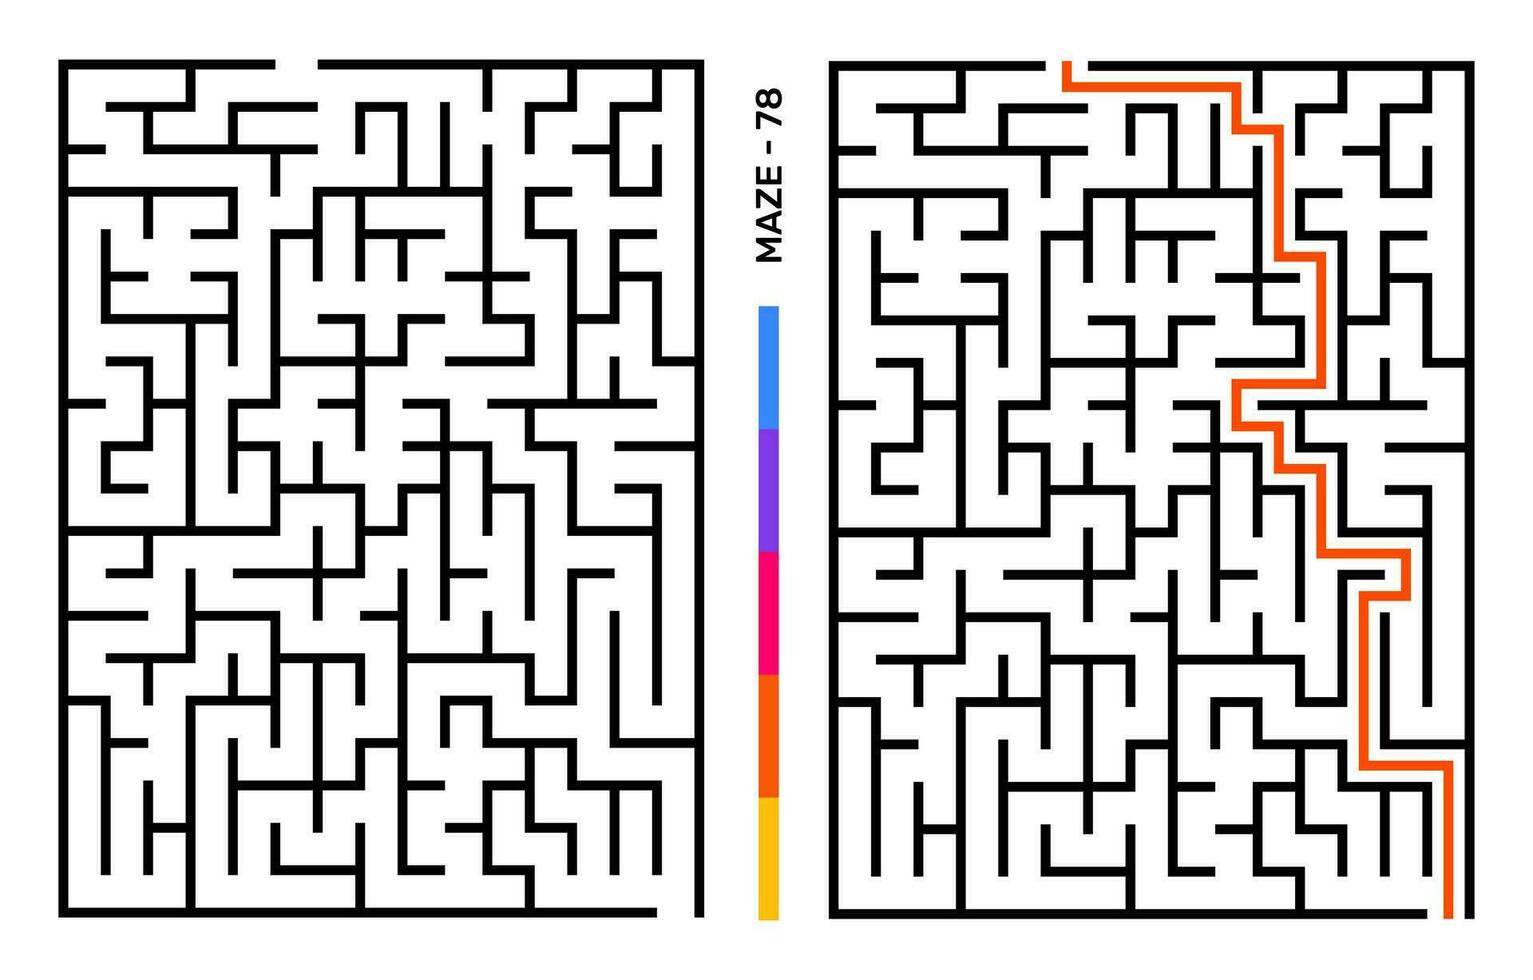 abstrakt labyrint pussel labyrint med inträde och utgång. labyrint för aktivitet bok. problemlösning pussel spel för arbetsbok. vektor illustration - eps 10